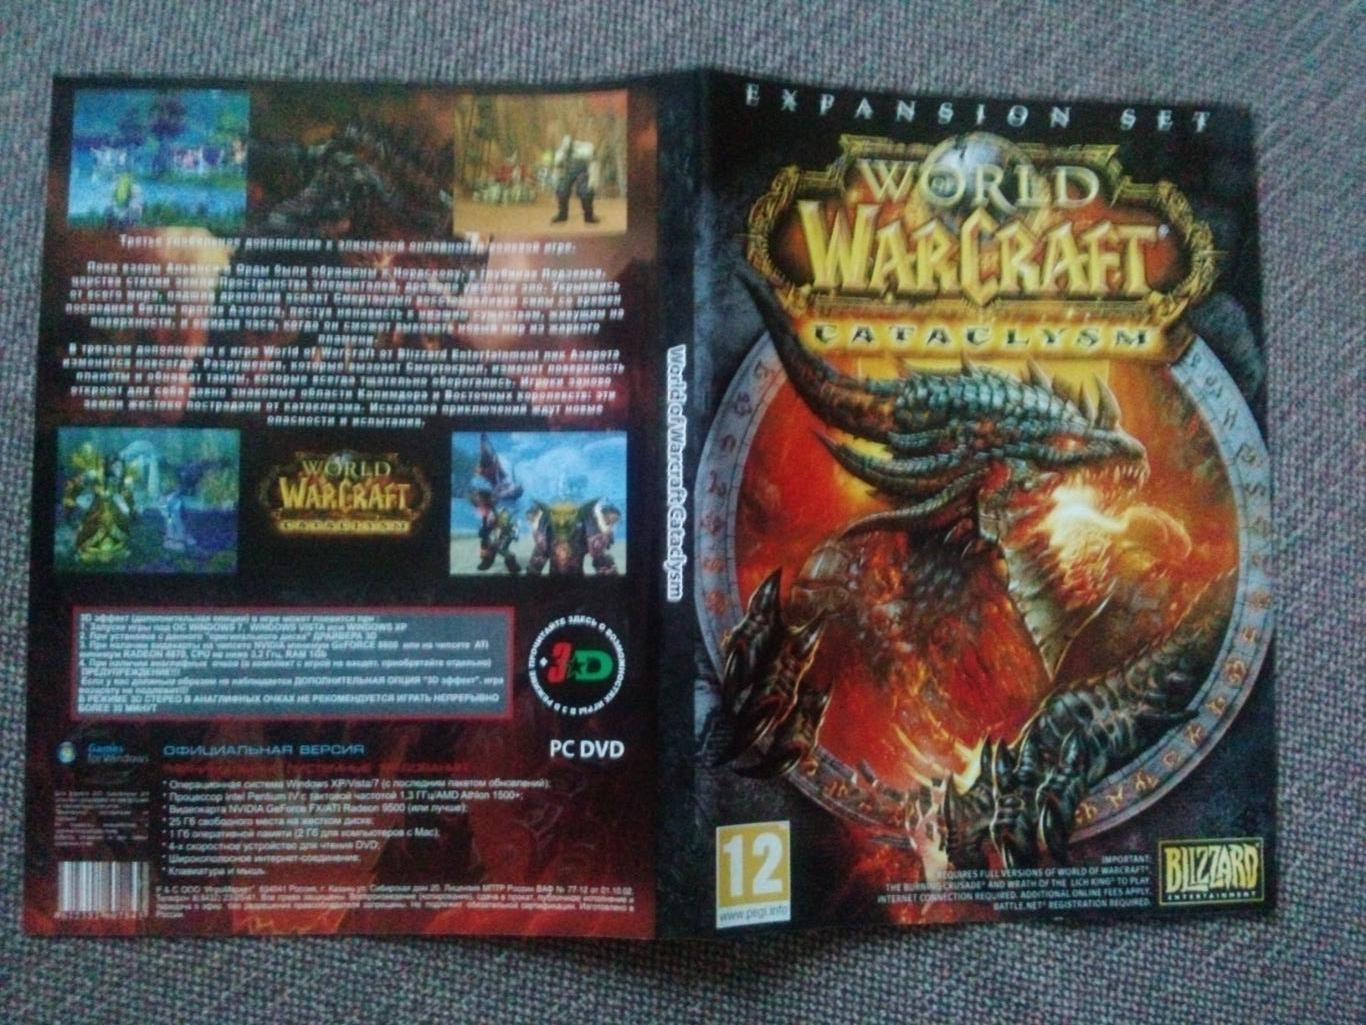 PC - DVD диск : World Warcraft - Cataclysm (игра для компьютера) лицензия 2